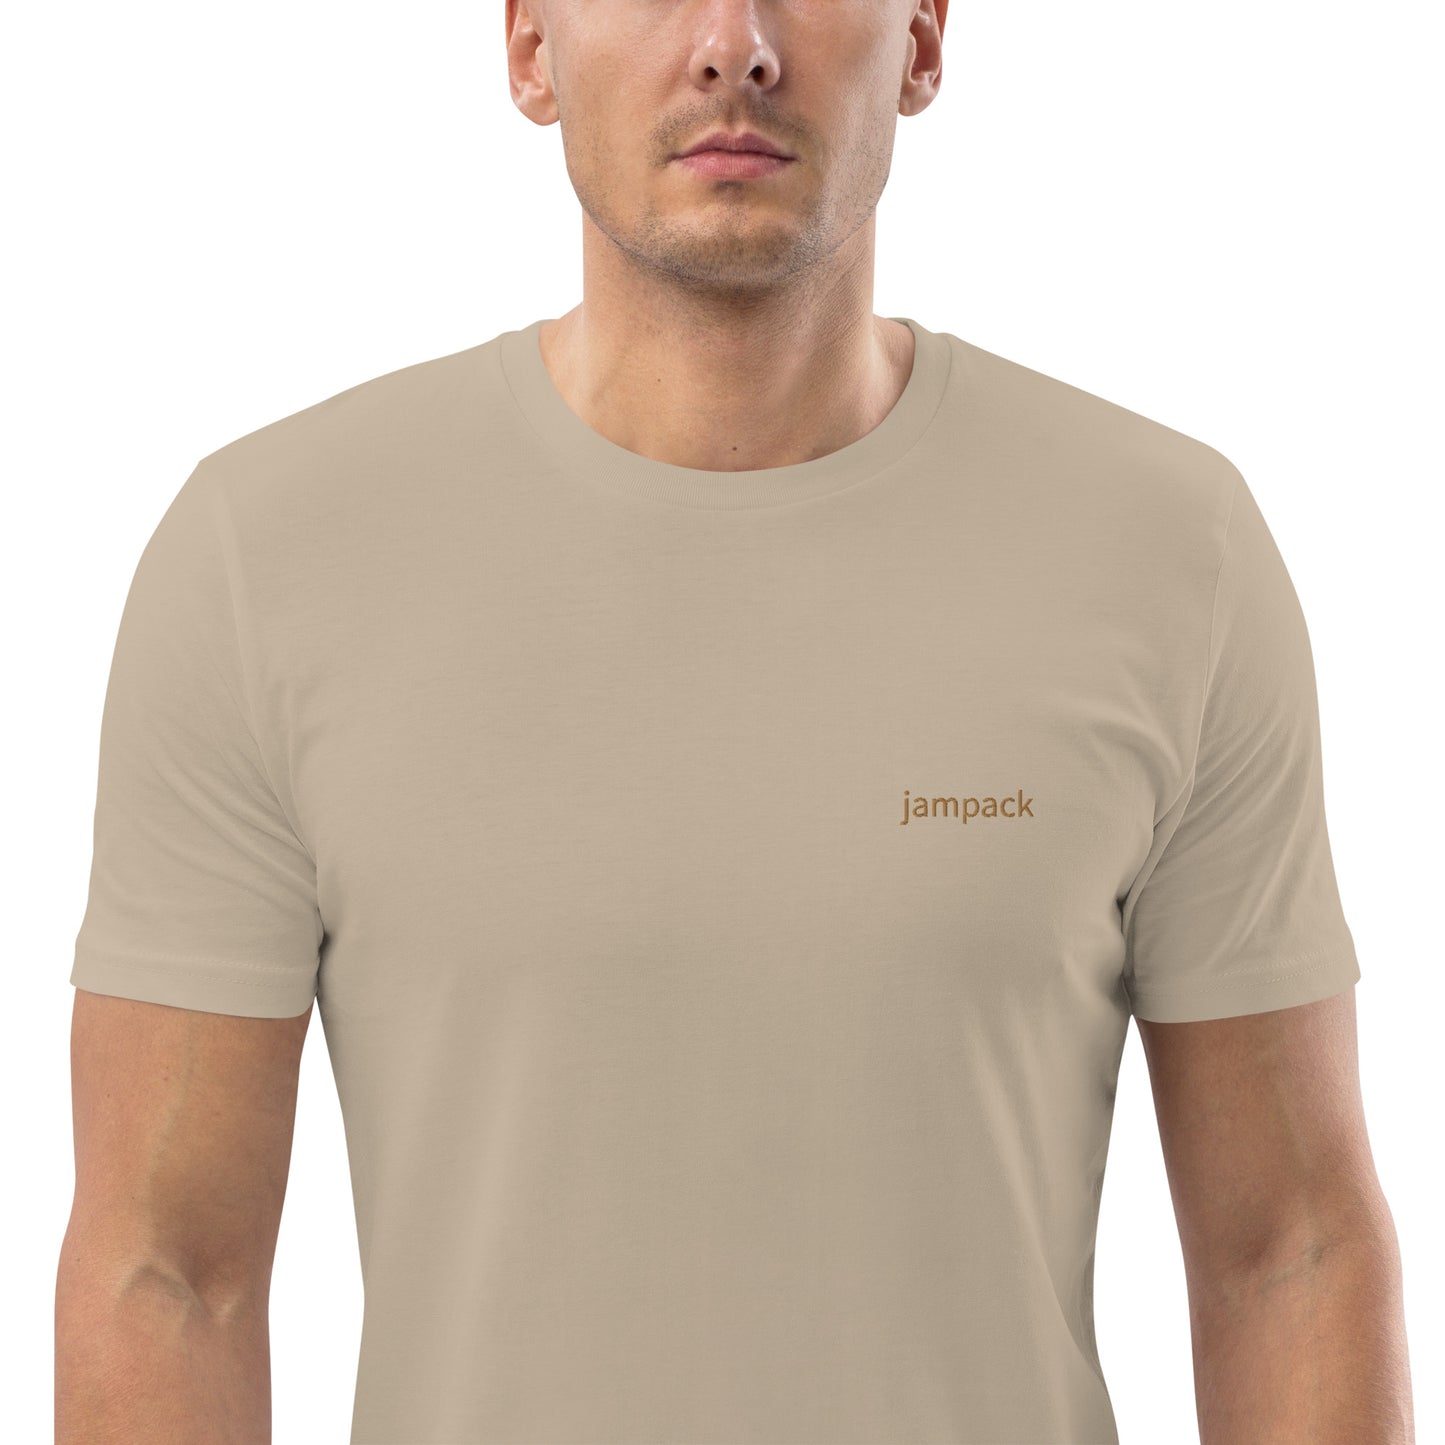 ユニセックス オーガニックコットン製Tシャツ